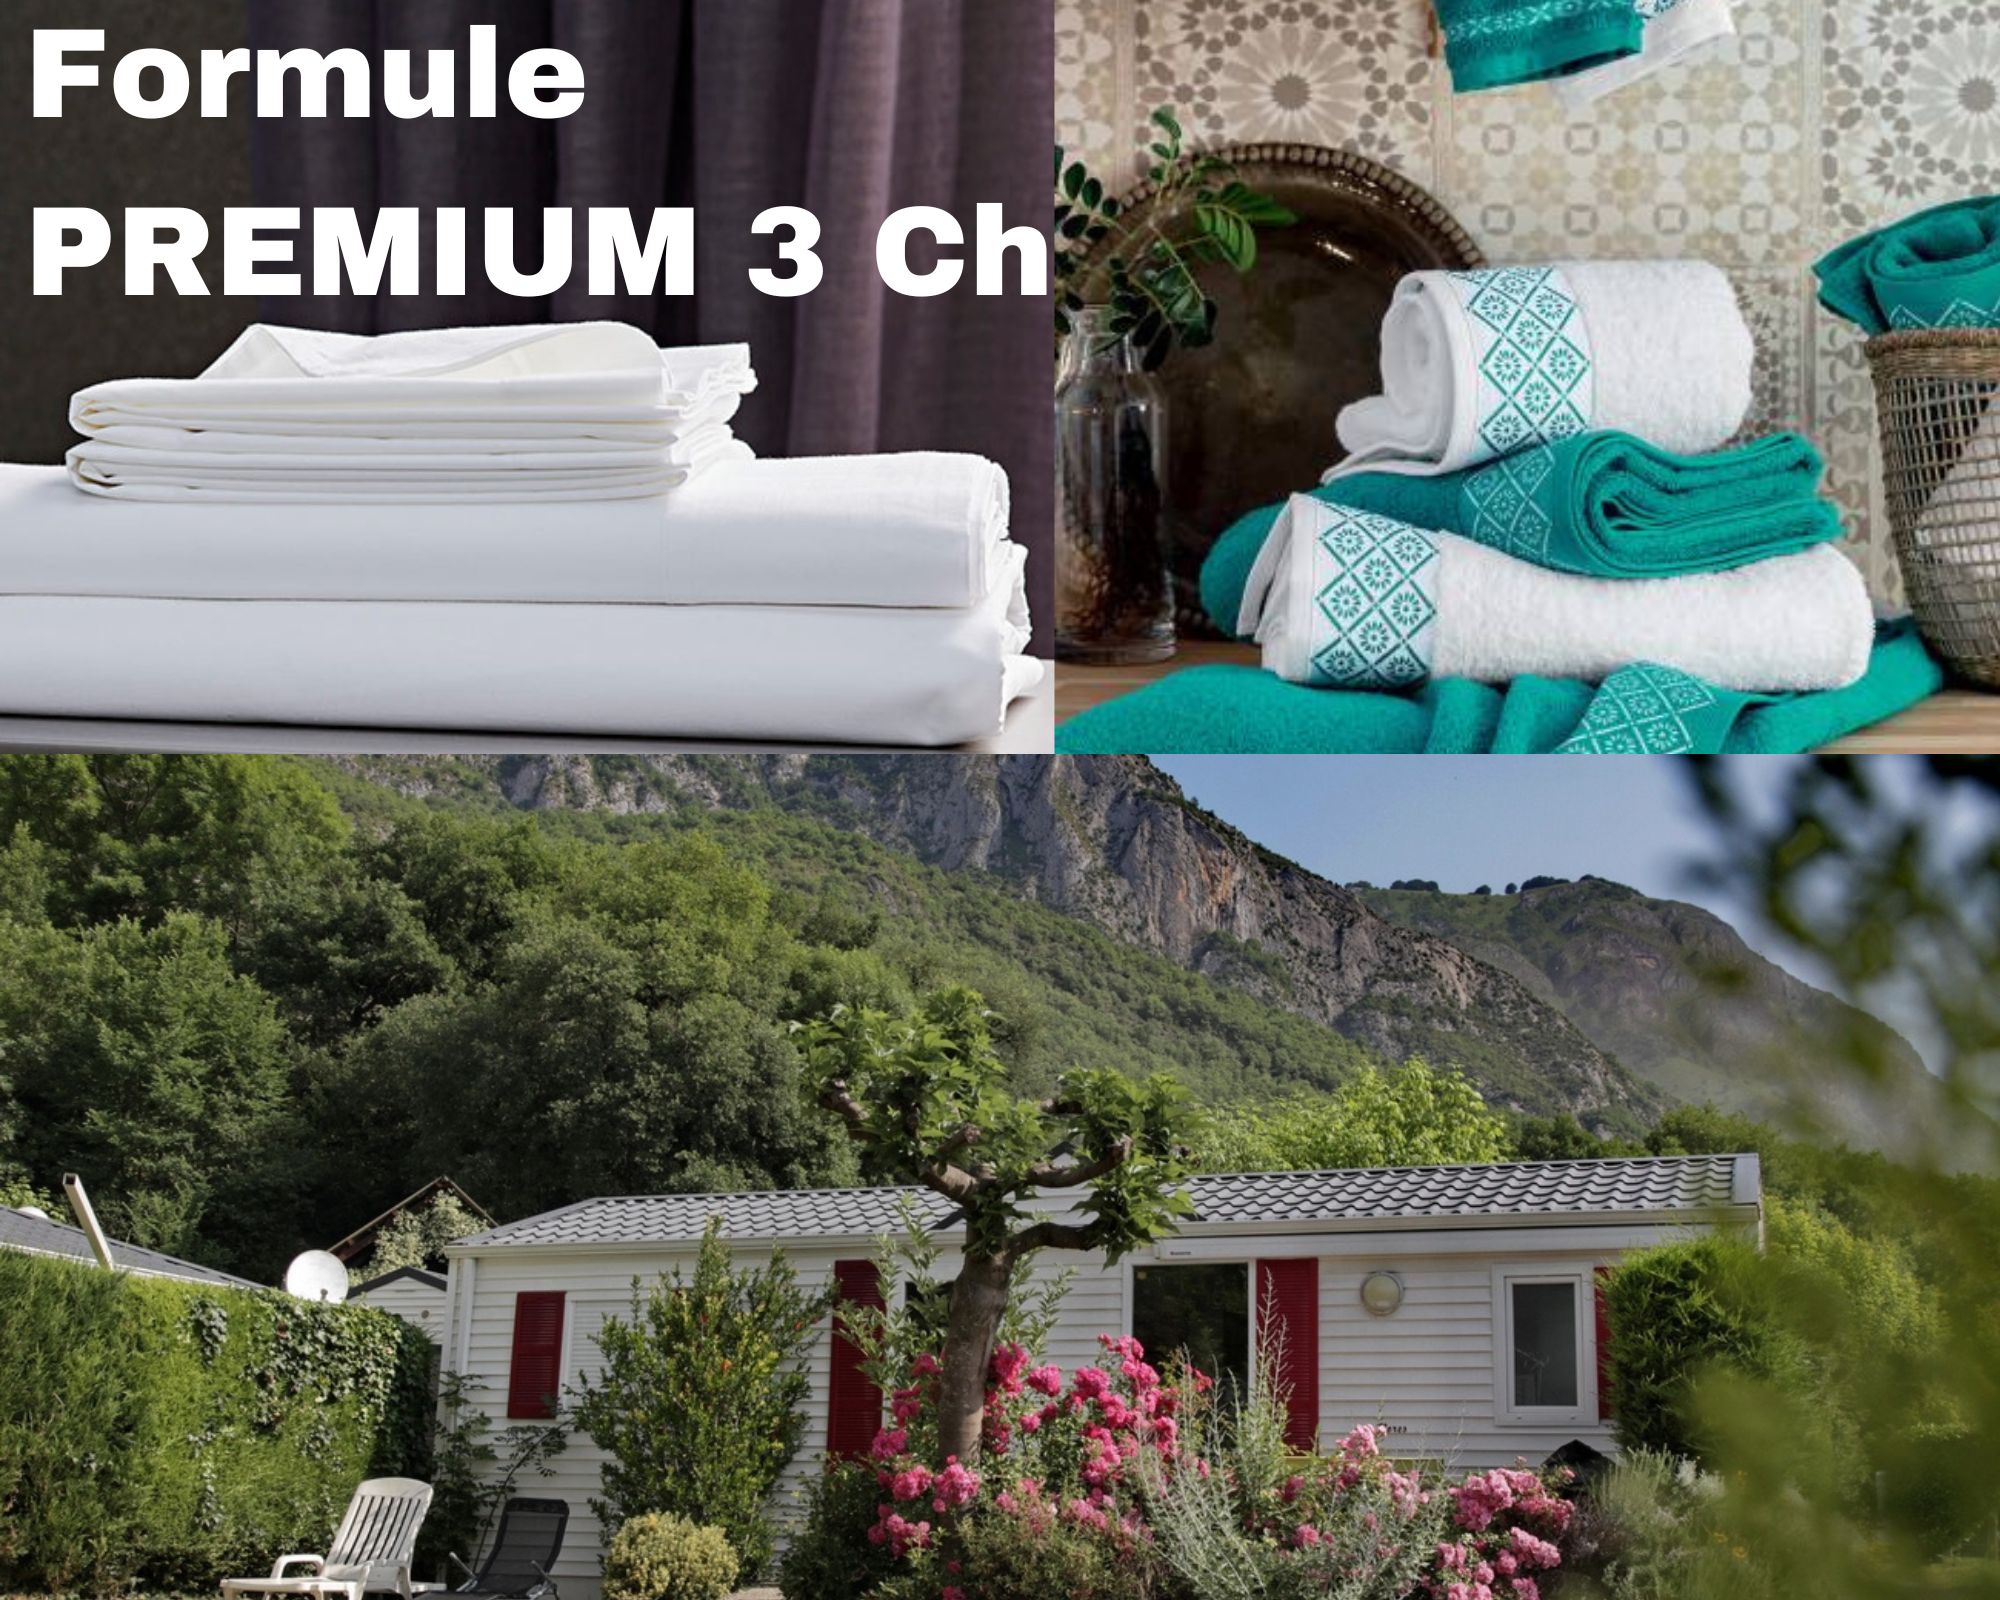 Formule PREMIUM - Mobile-home 3 chambres = +draps + serviettes +ménage